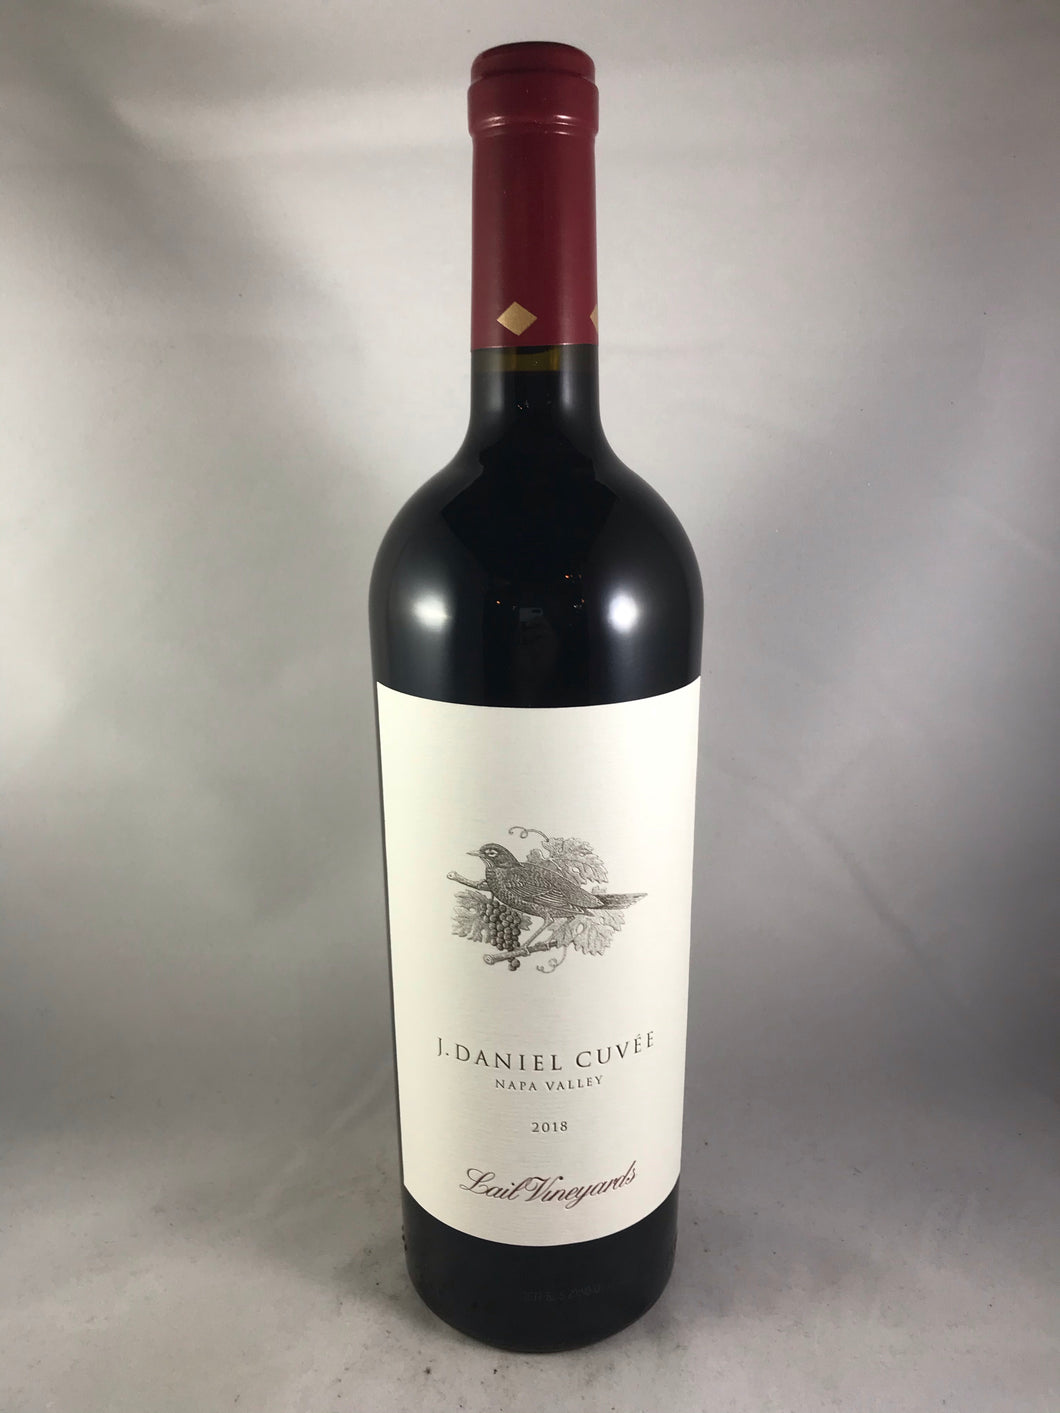 Lail Vineyards J. Daniel Cuvée Cabernet Sauvignon 2018, Napa Valley, CA